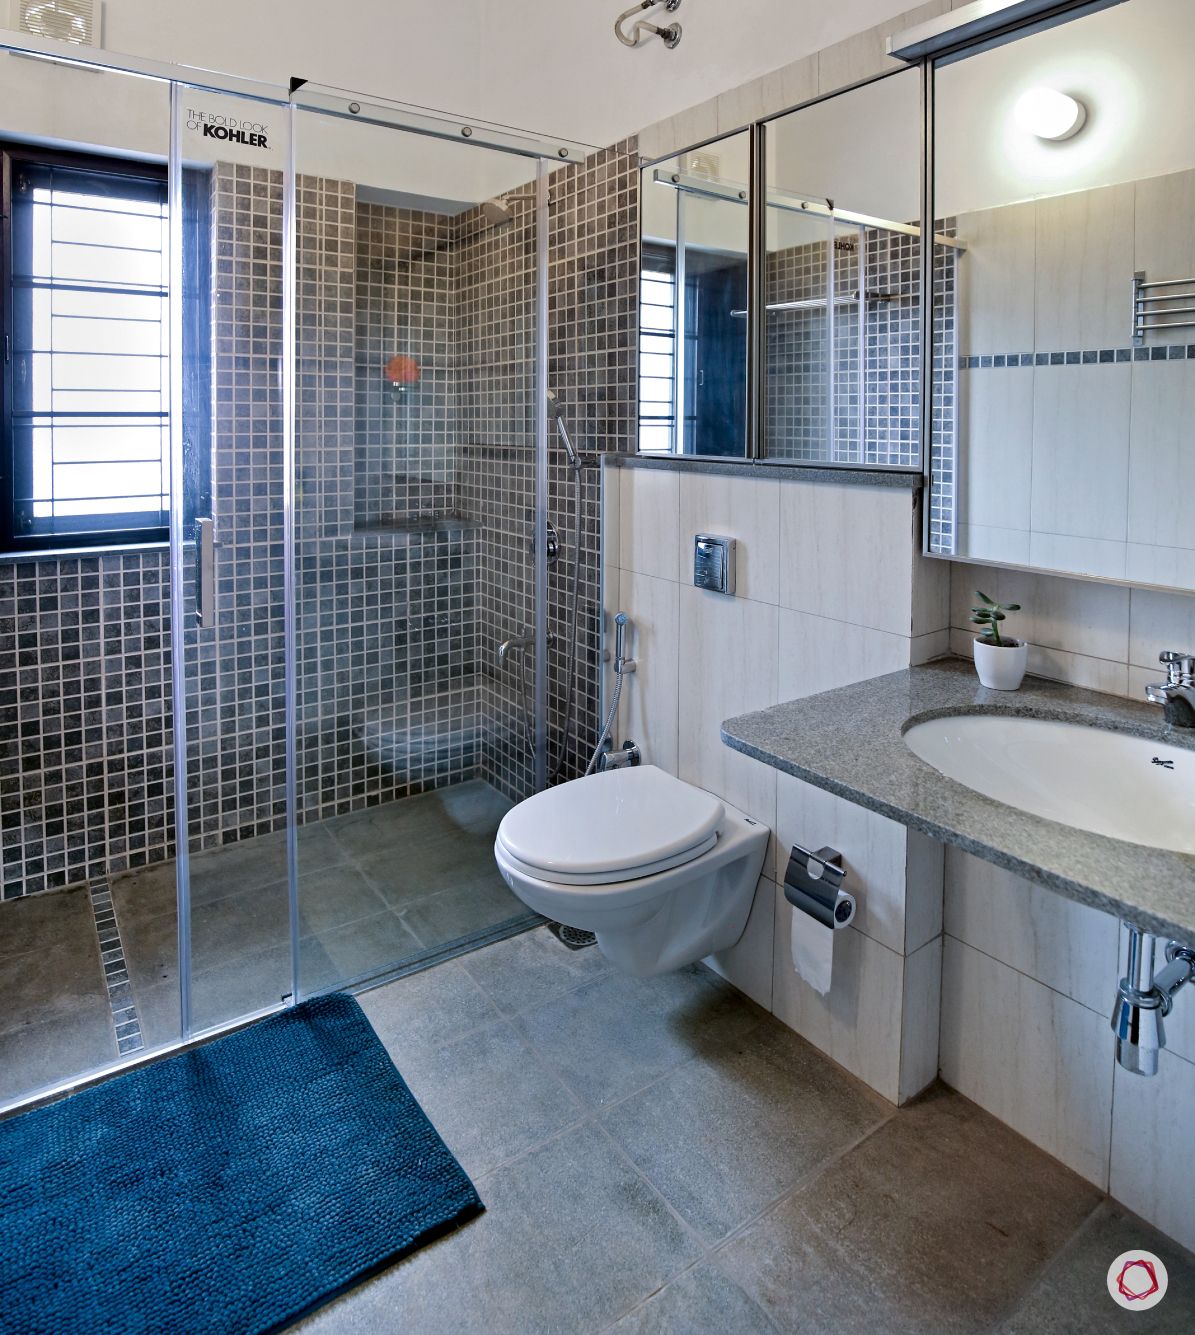 mosaic-wall-tiles-bathtub-toilet-white-blue-mirror-sink